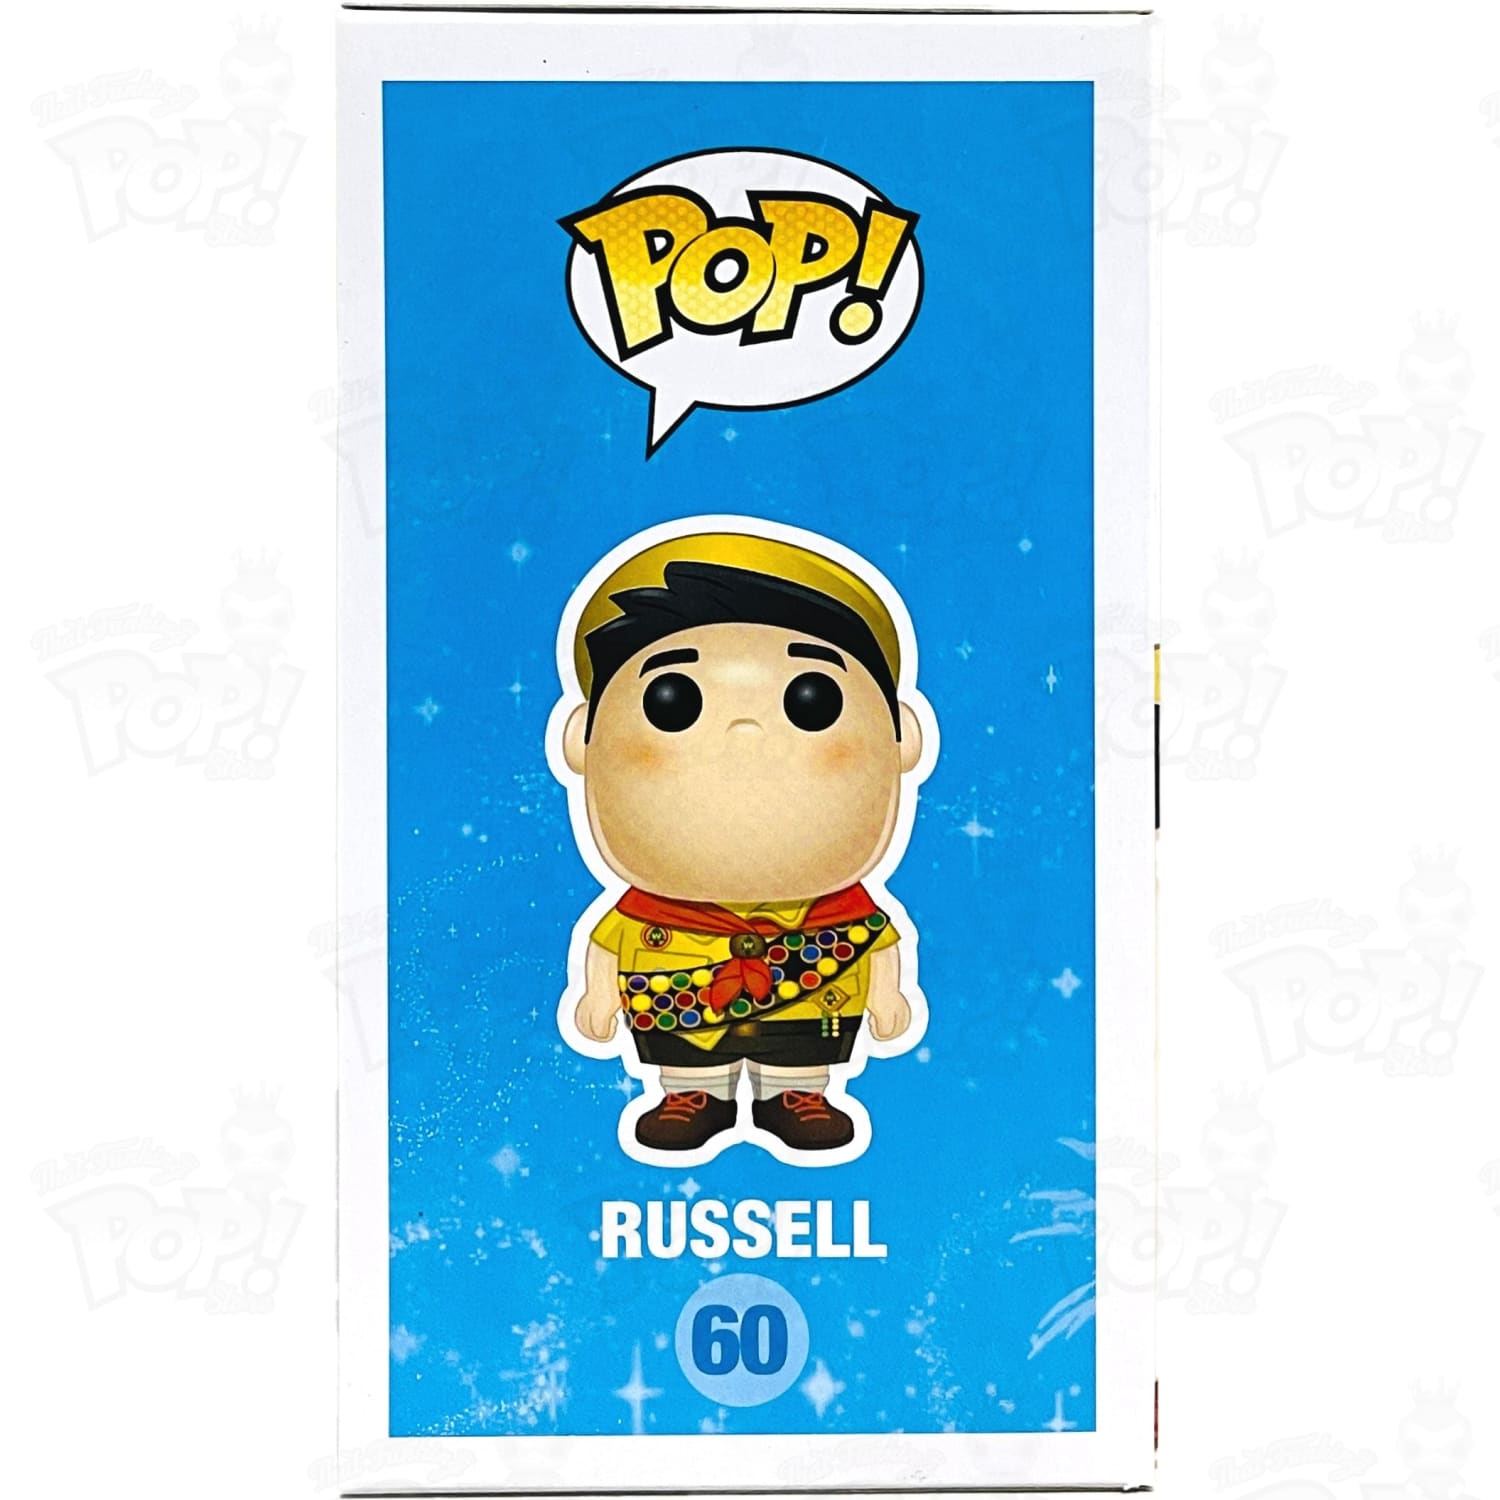 Funko Pop! Disney Pixar Up Russell Pop #60 Rare Vaulted Vinyl  Figure/Hardstack